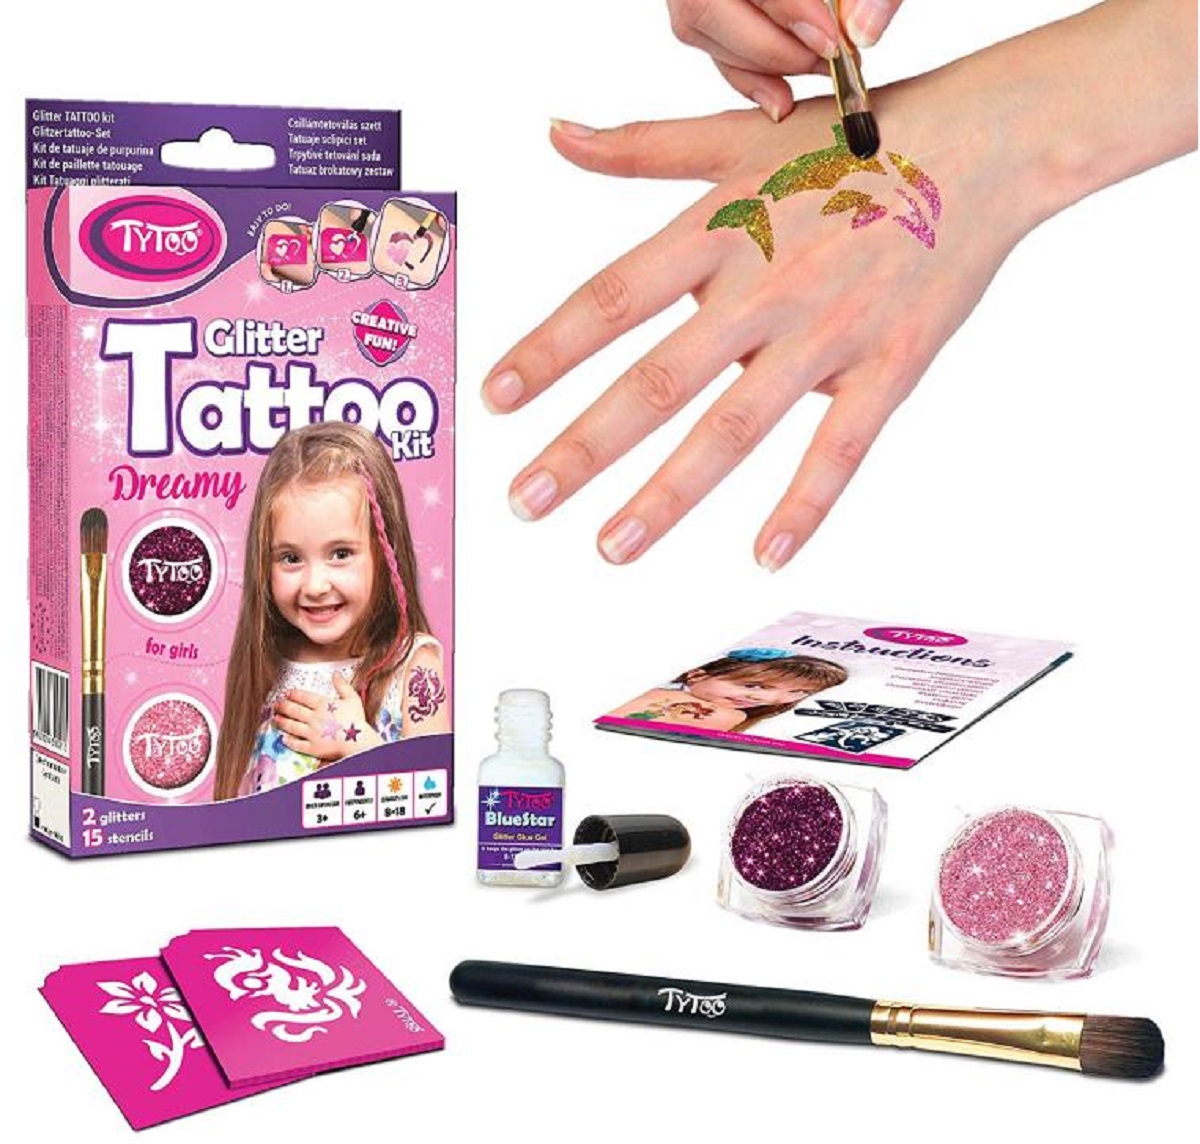 Glitter Tattoo Kit: Dreamy. Tatuaje cu sclipici: visator